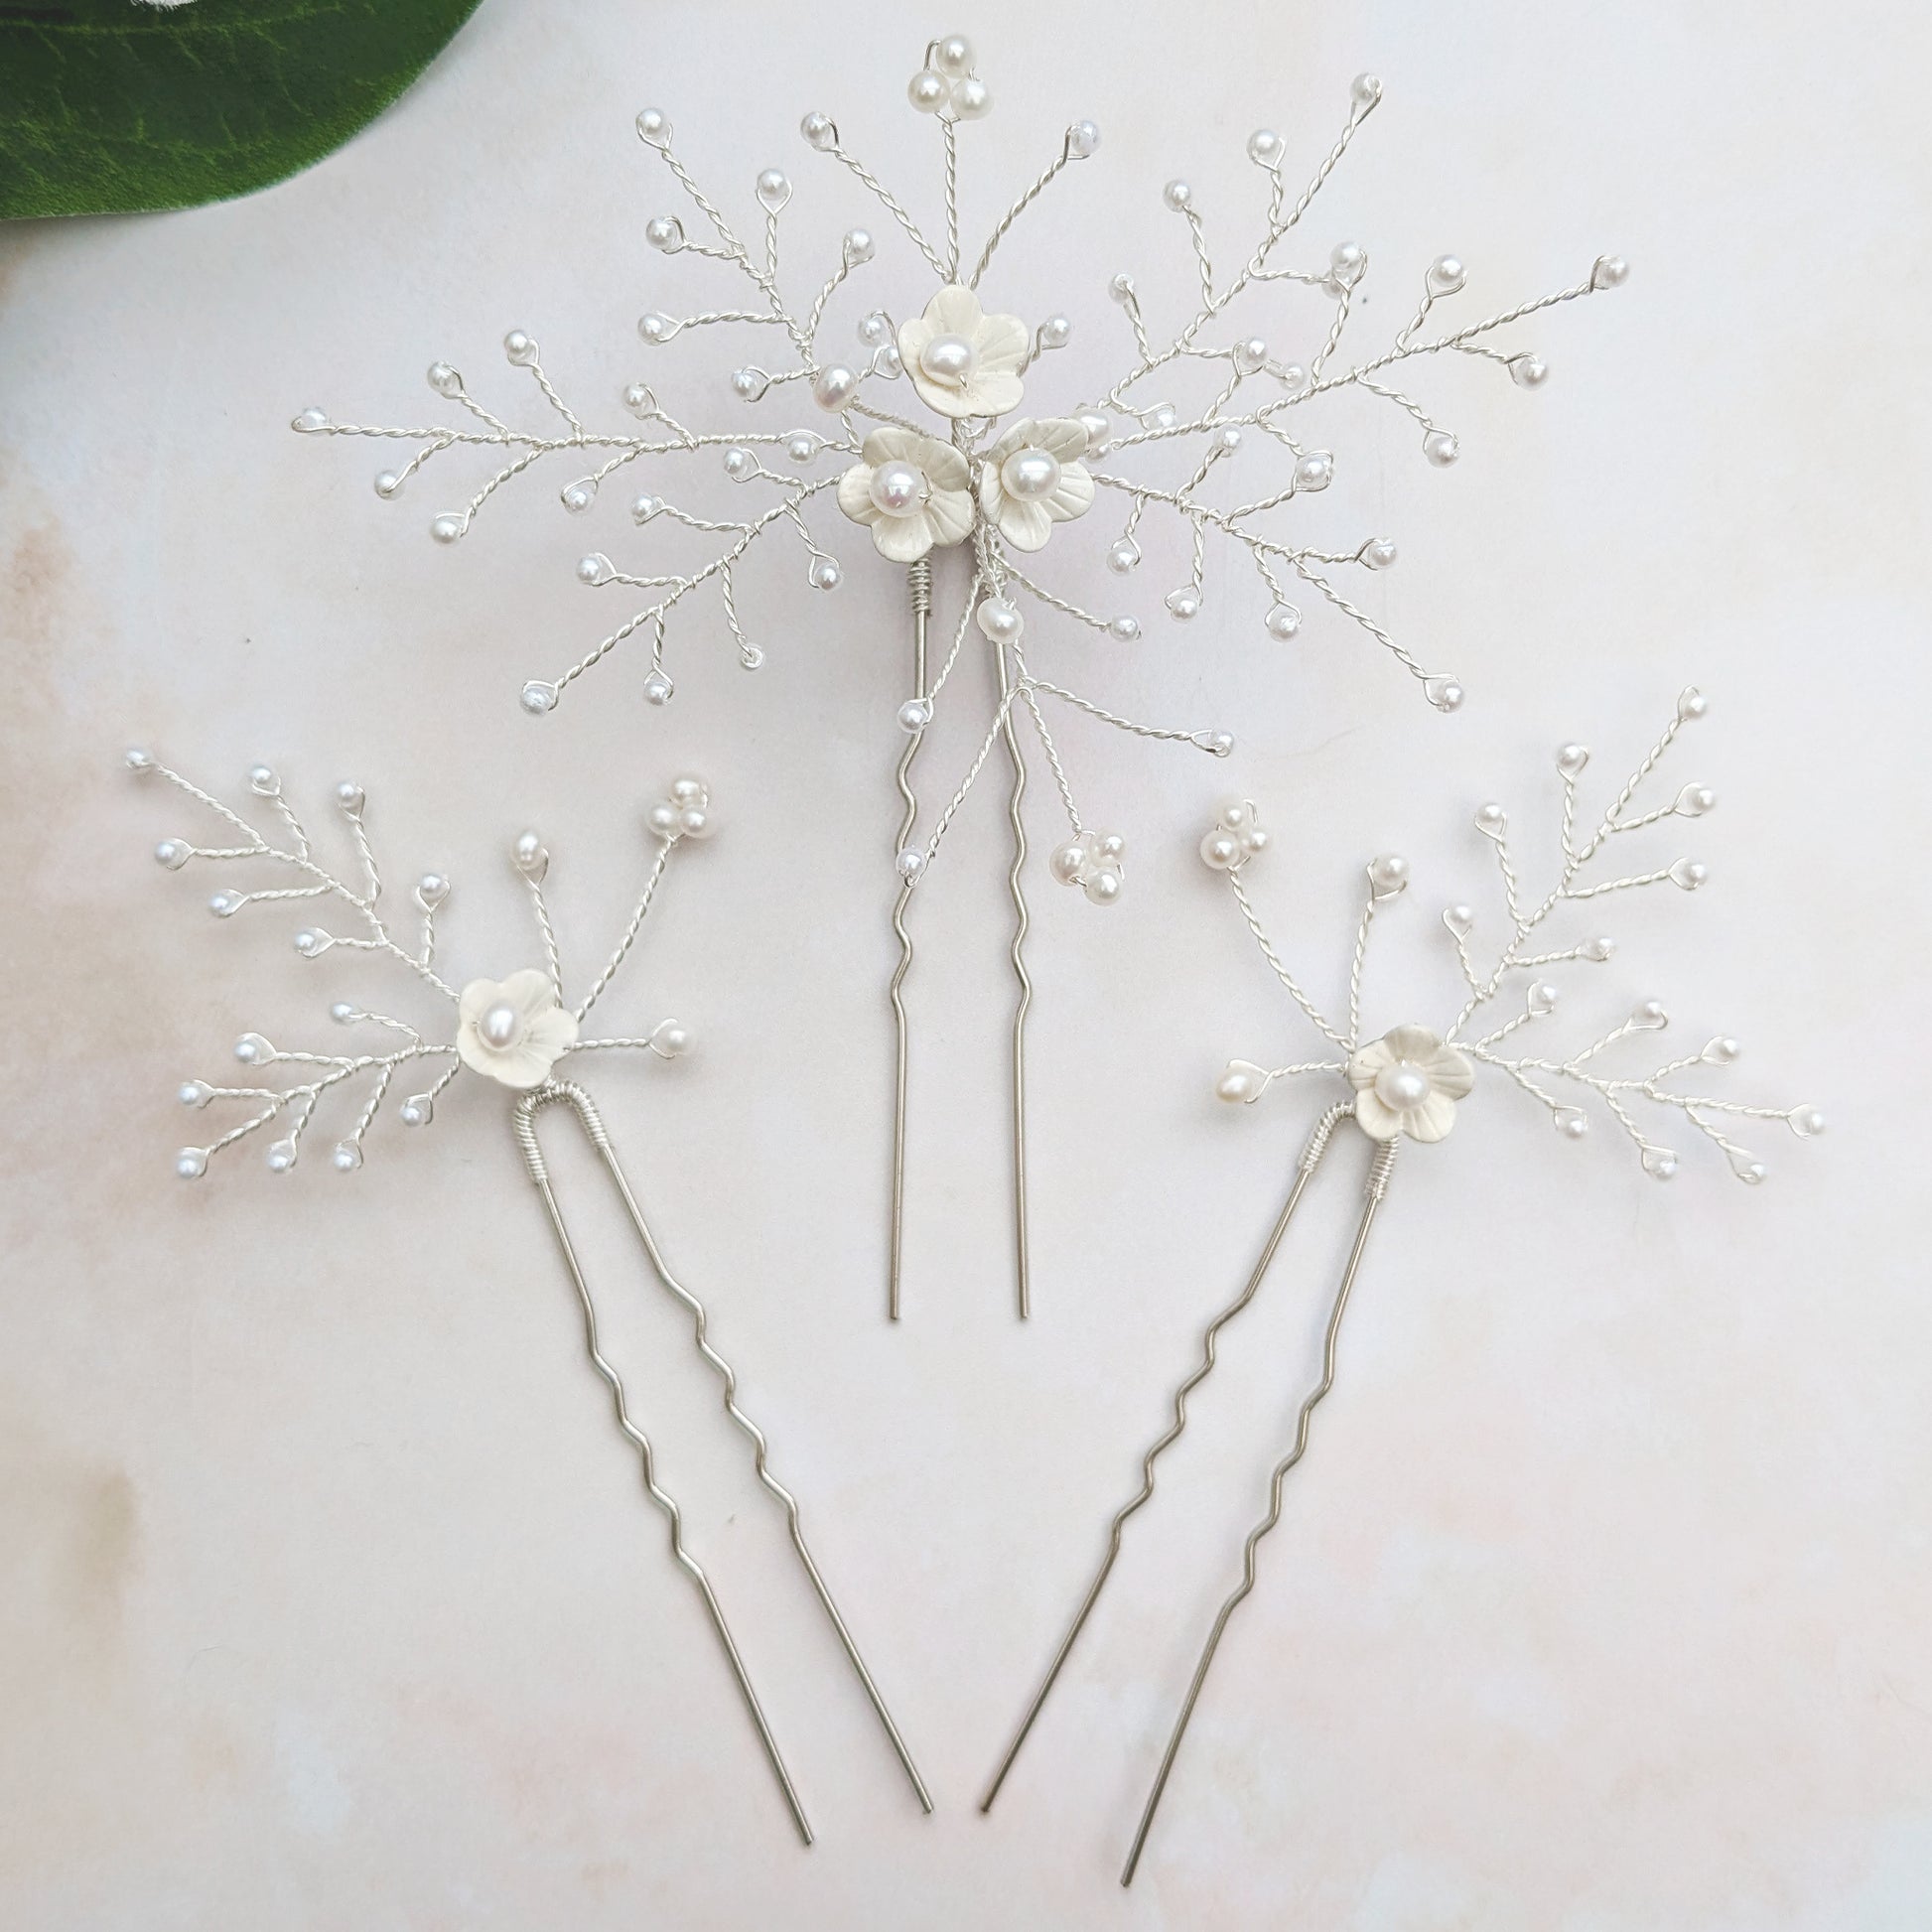 Modern floral hair pin set - Susie Warner